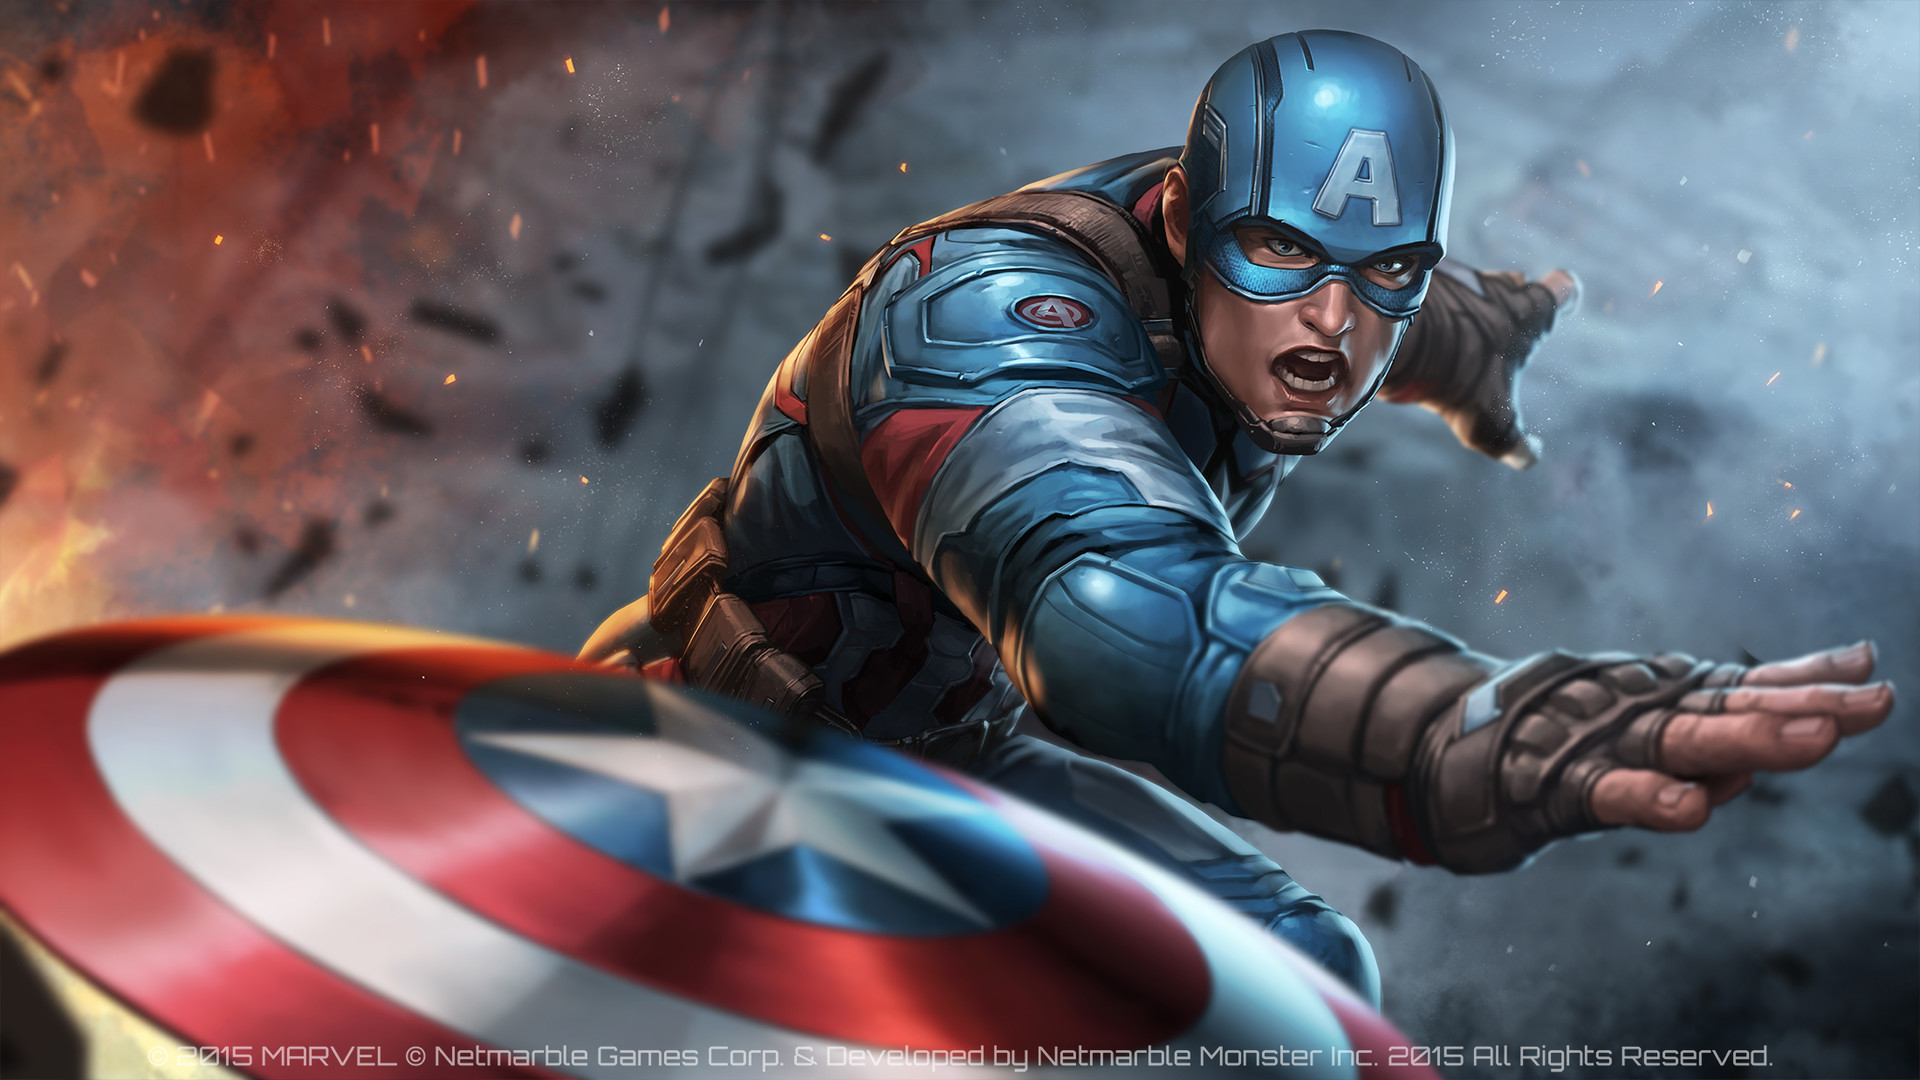 놀라운 미래의 싸움 벽지,캡틴 아메리카,슈퍼 히어로,소설 속의 인물,영웅,액션 피규어